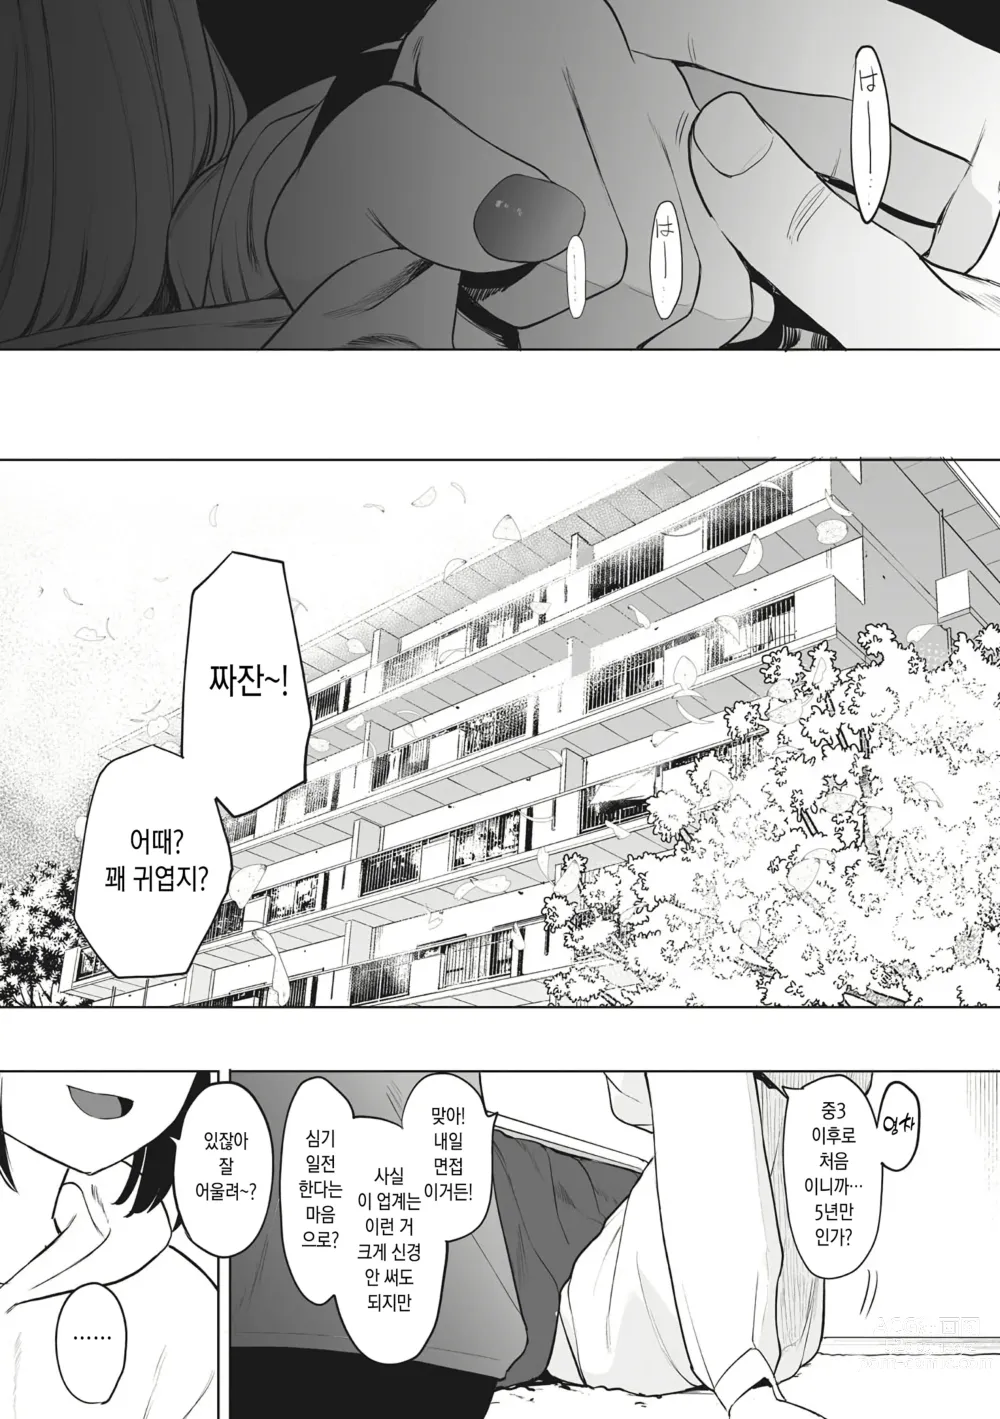 Page 34 of manga Eightman Sensei no Okage de Kanojo ga Dekimashita!